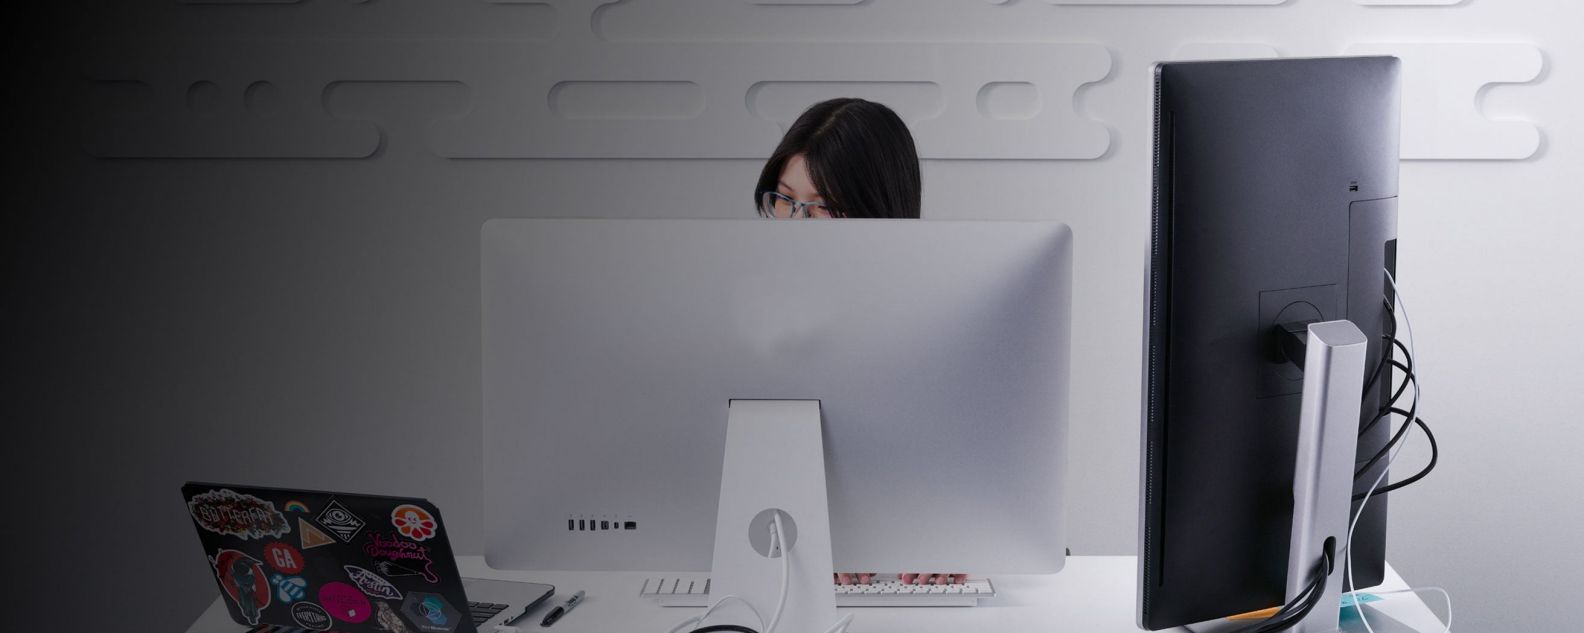 Mujer trabajando concentrada frente a un monitor portátil